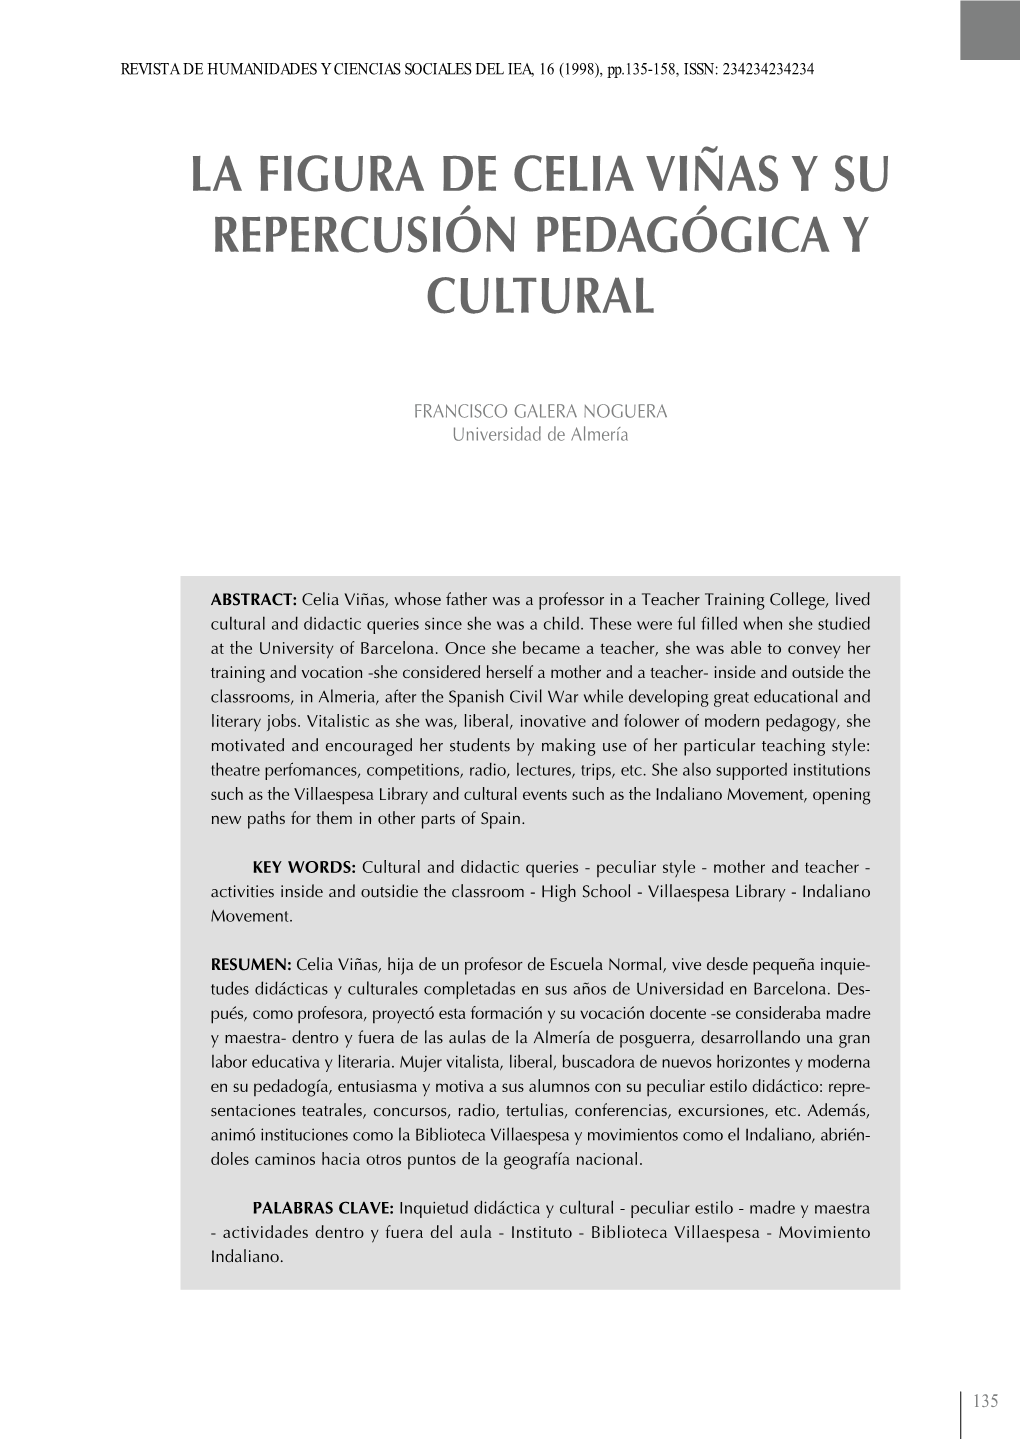 La Figura De Celia Viñas Y Su Repercusión Pedagógica Y Cultural REVISTA DE HUMANIDADES Y CIENCIAS SOCIALES DEL IEA, 16 (1998), Pp.135-158, ISSN: 234234234234